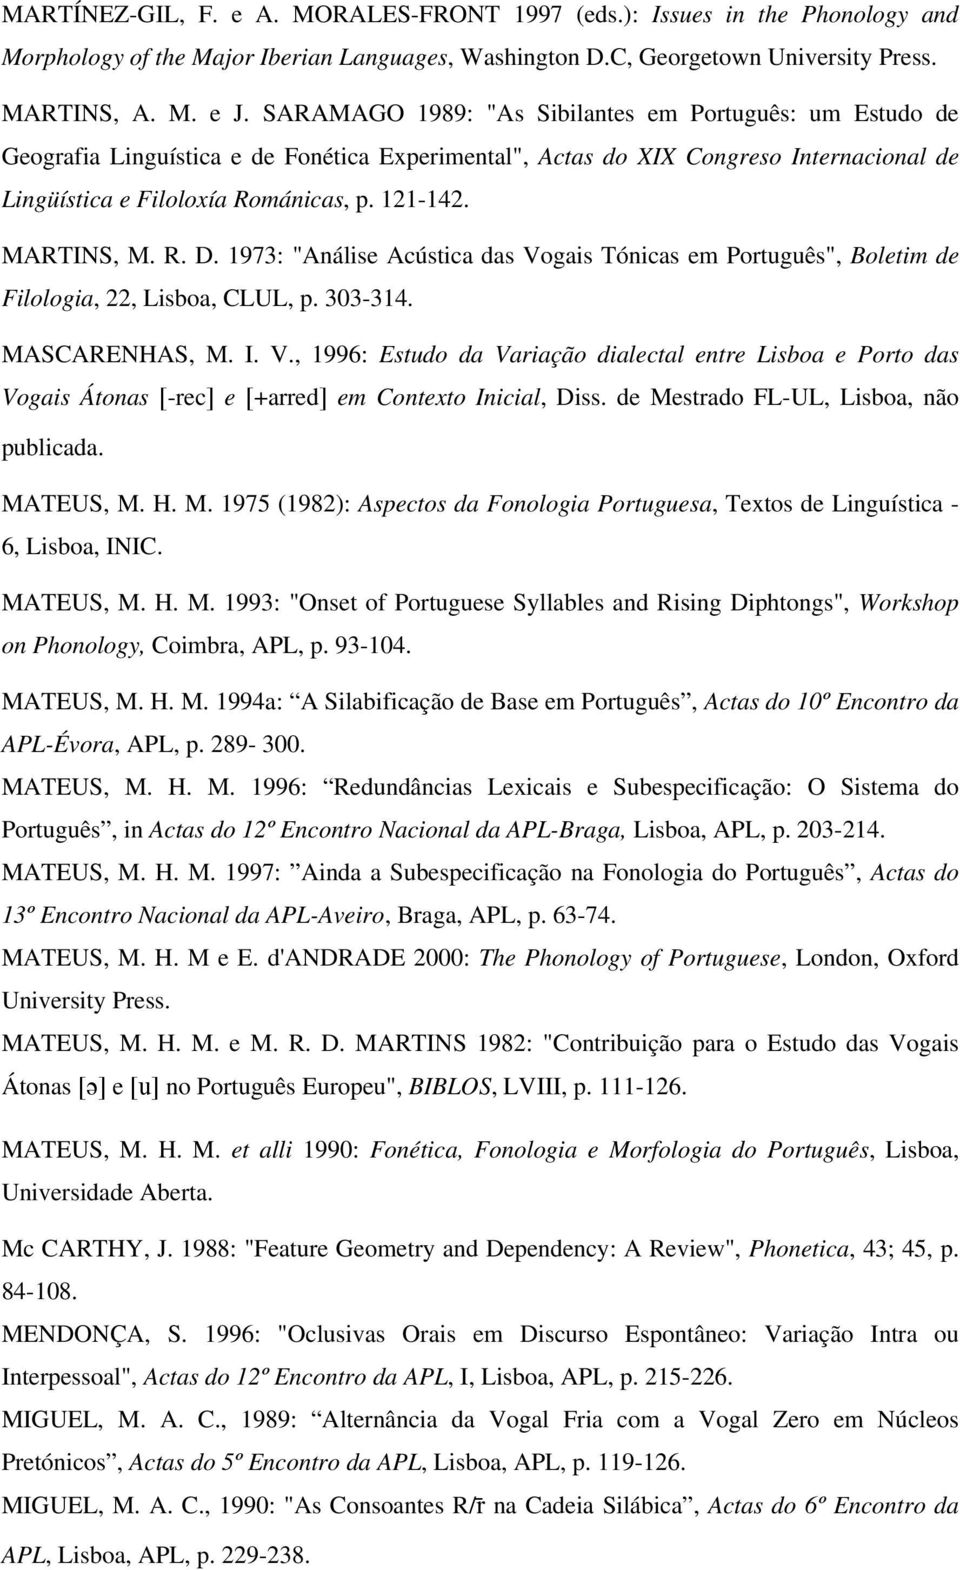 MARTINS, M. R. D. 1973: "Análise Acústica das Vogais Tónicas em Português", Boletim de Filologia, 22, Lisboa, CLUL, p. 303-314. MASCARENHAS, M. I. V., 1996: Estudo da Variação dialectal entre Lisboa e Porto das Vogais Átonas [-rec] e [+arred] em Contexto Inicial, Diss.